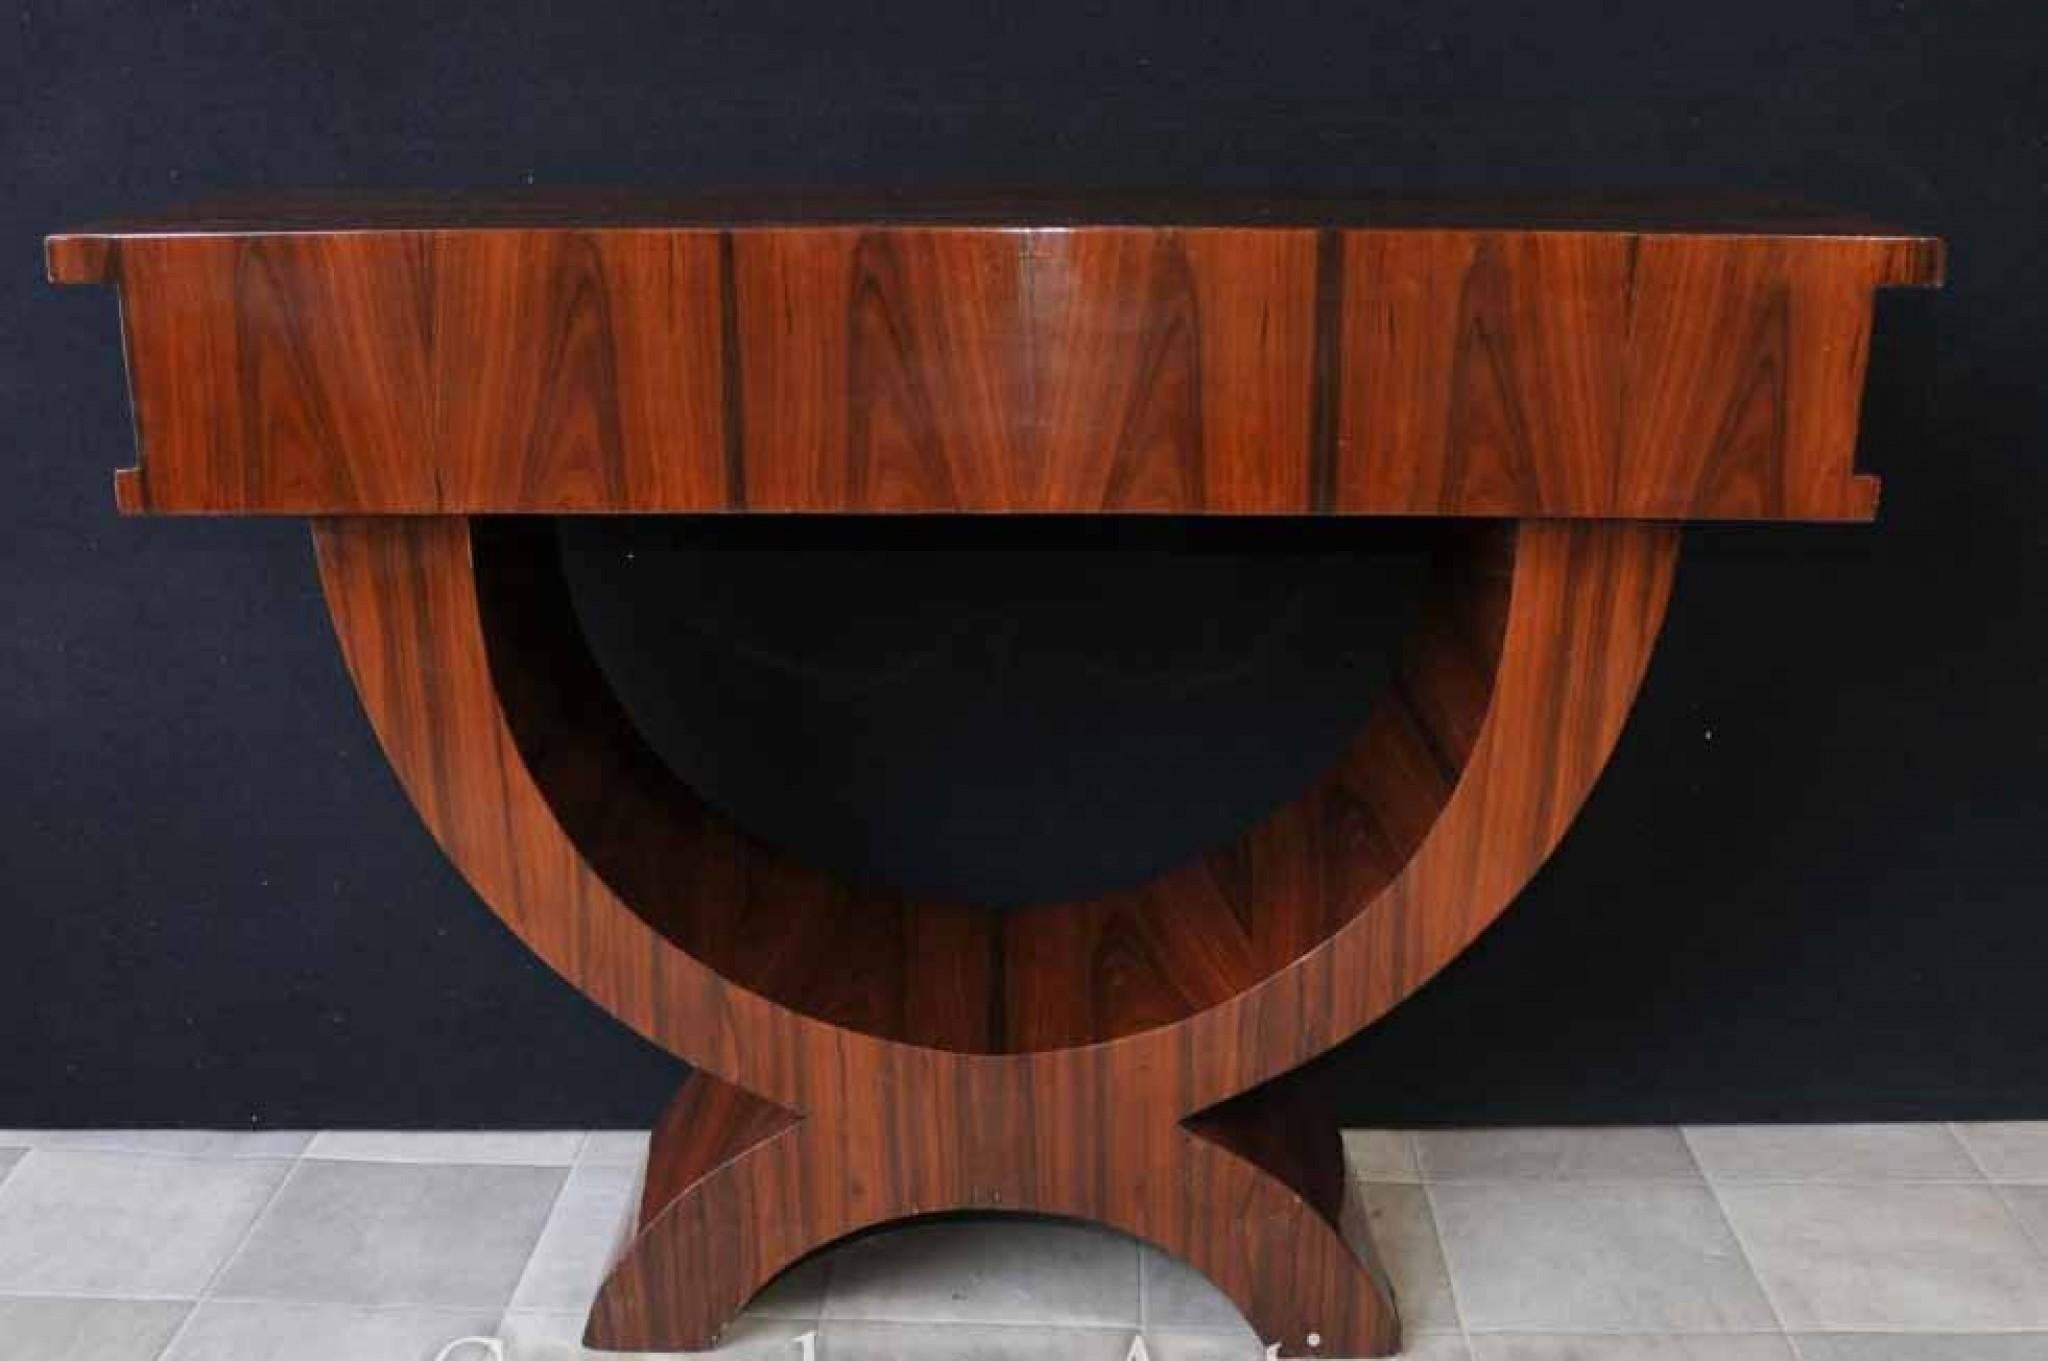 Merveilleuse table console en bois de rose de style art déco
Le design épuré et minimal capture l'essence même des années 1920
Un seul tiroir à l'avant pour le rangement
Nous disposons d'une large gamme d'autres meubles art déco. N'hésitez pas à